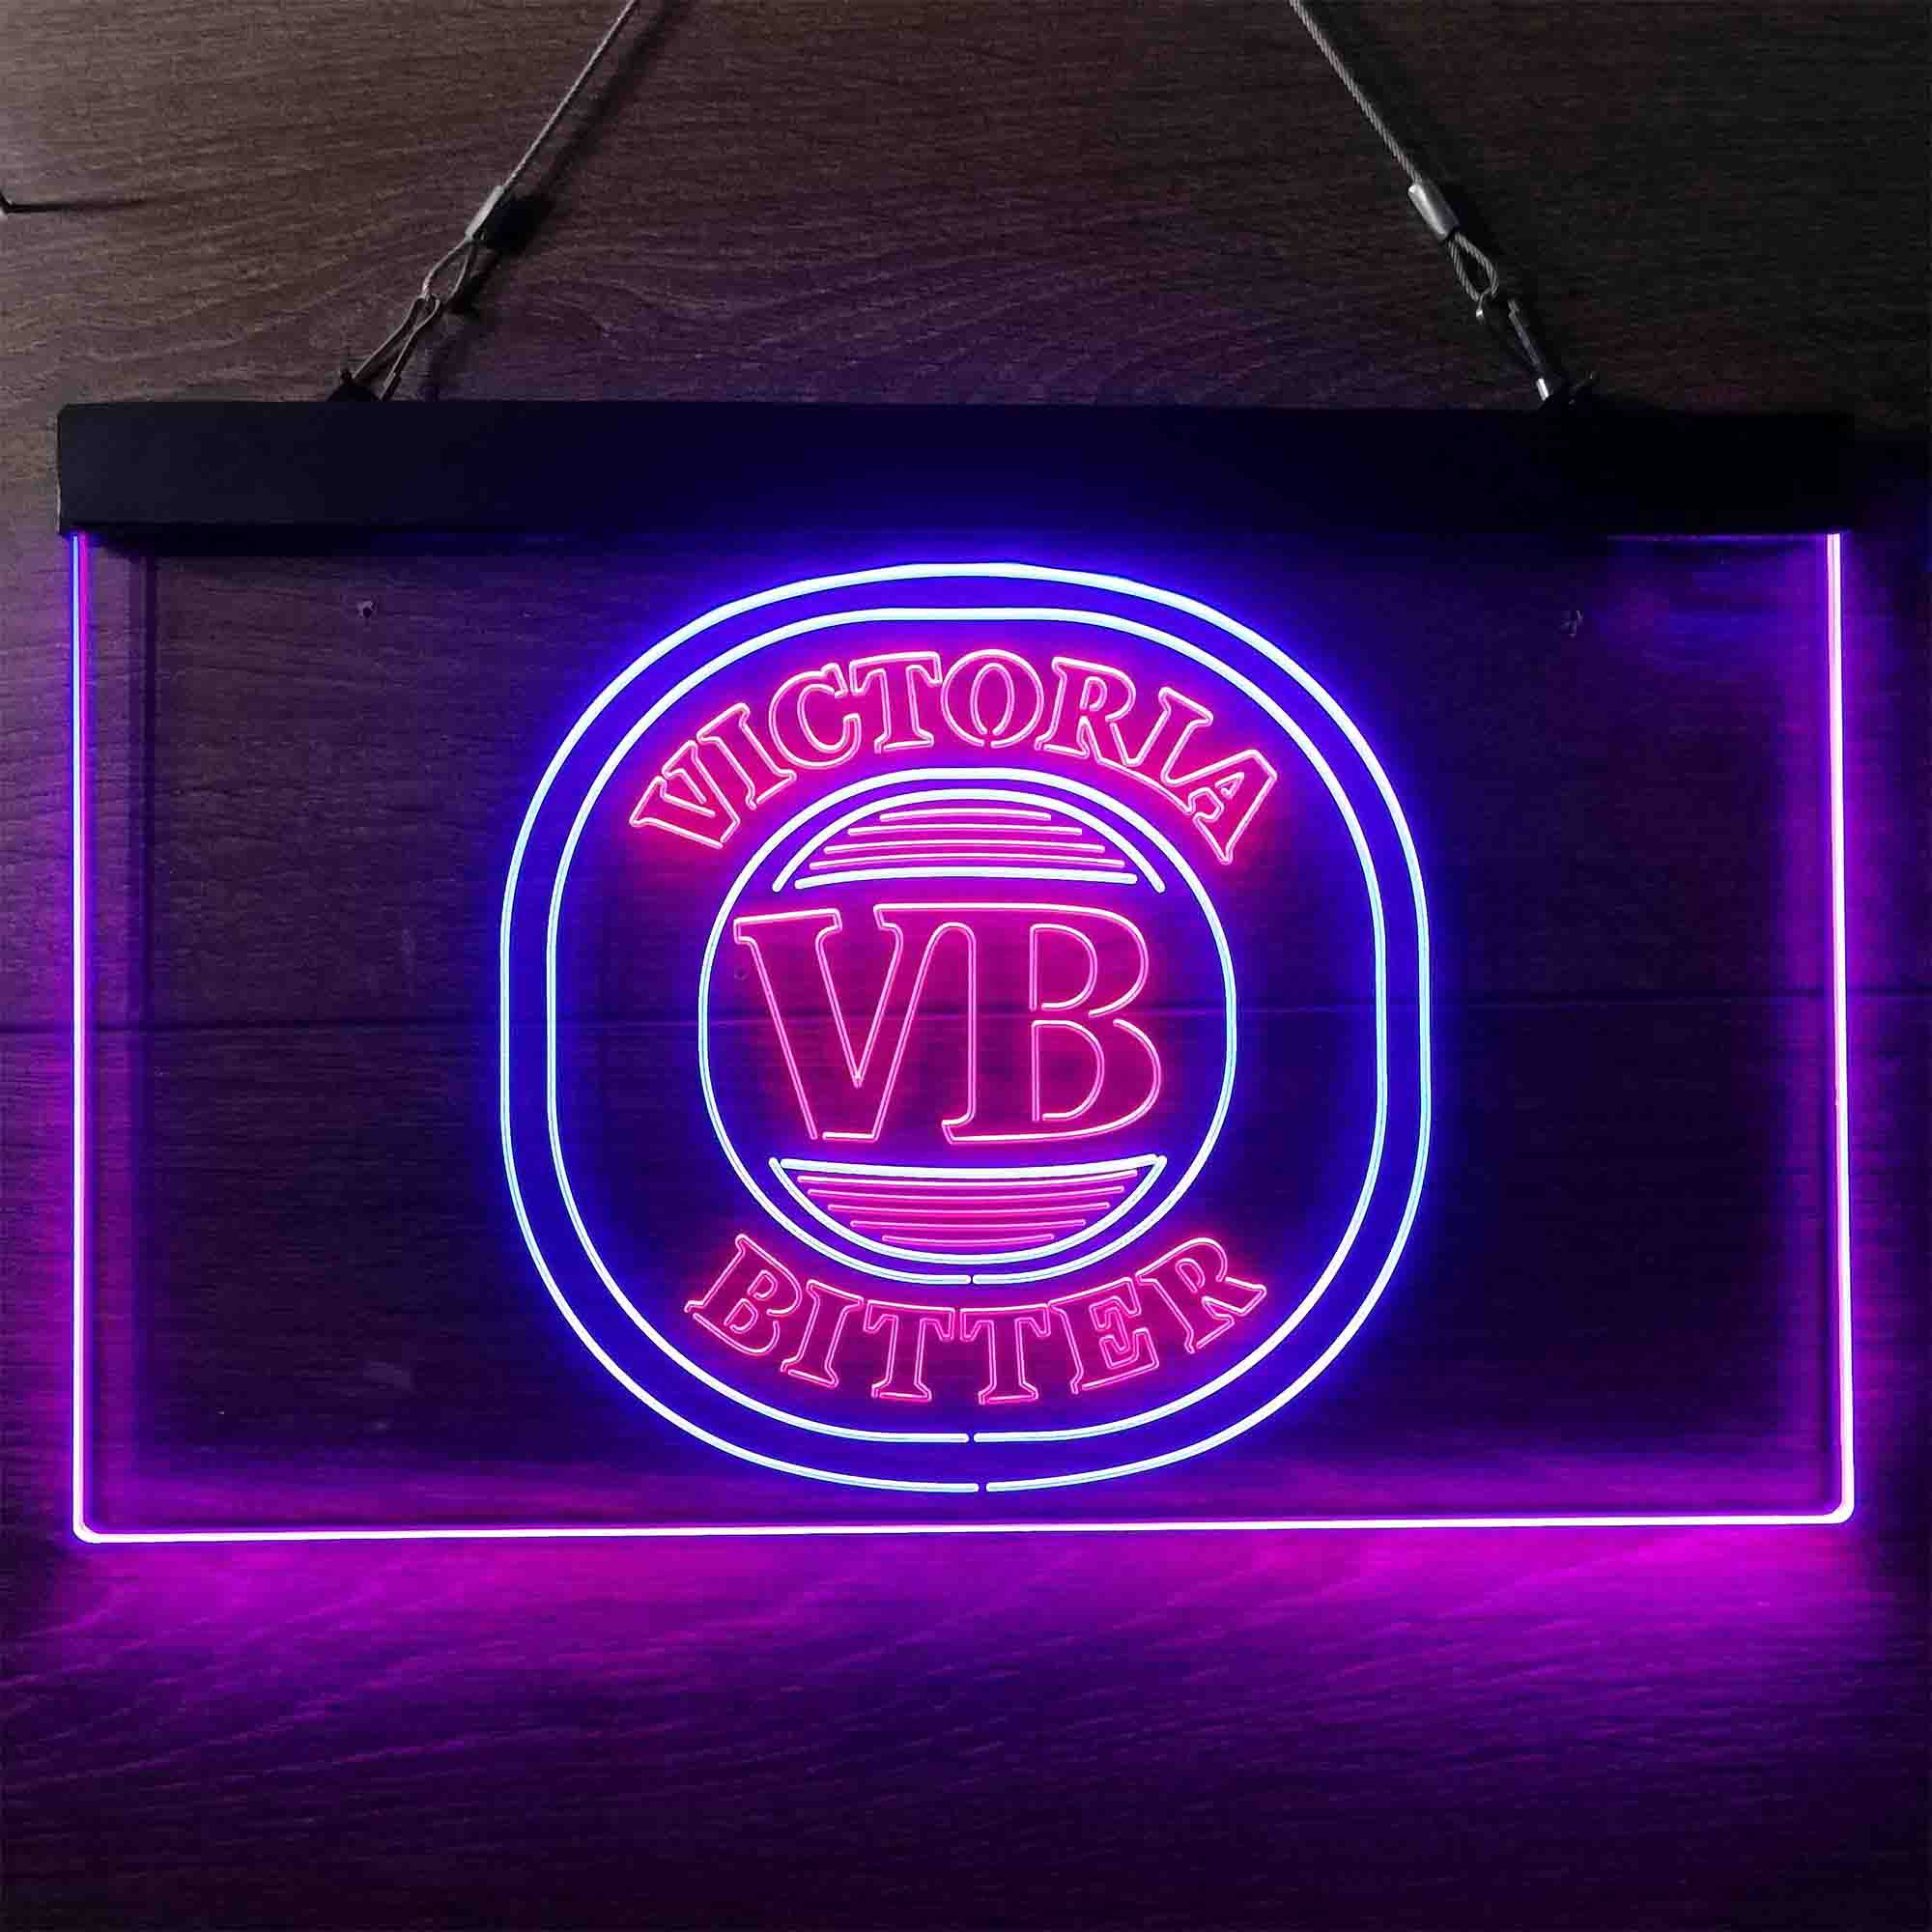 Victoria Bitter VB Beer Neon LED Sign